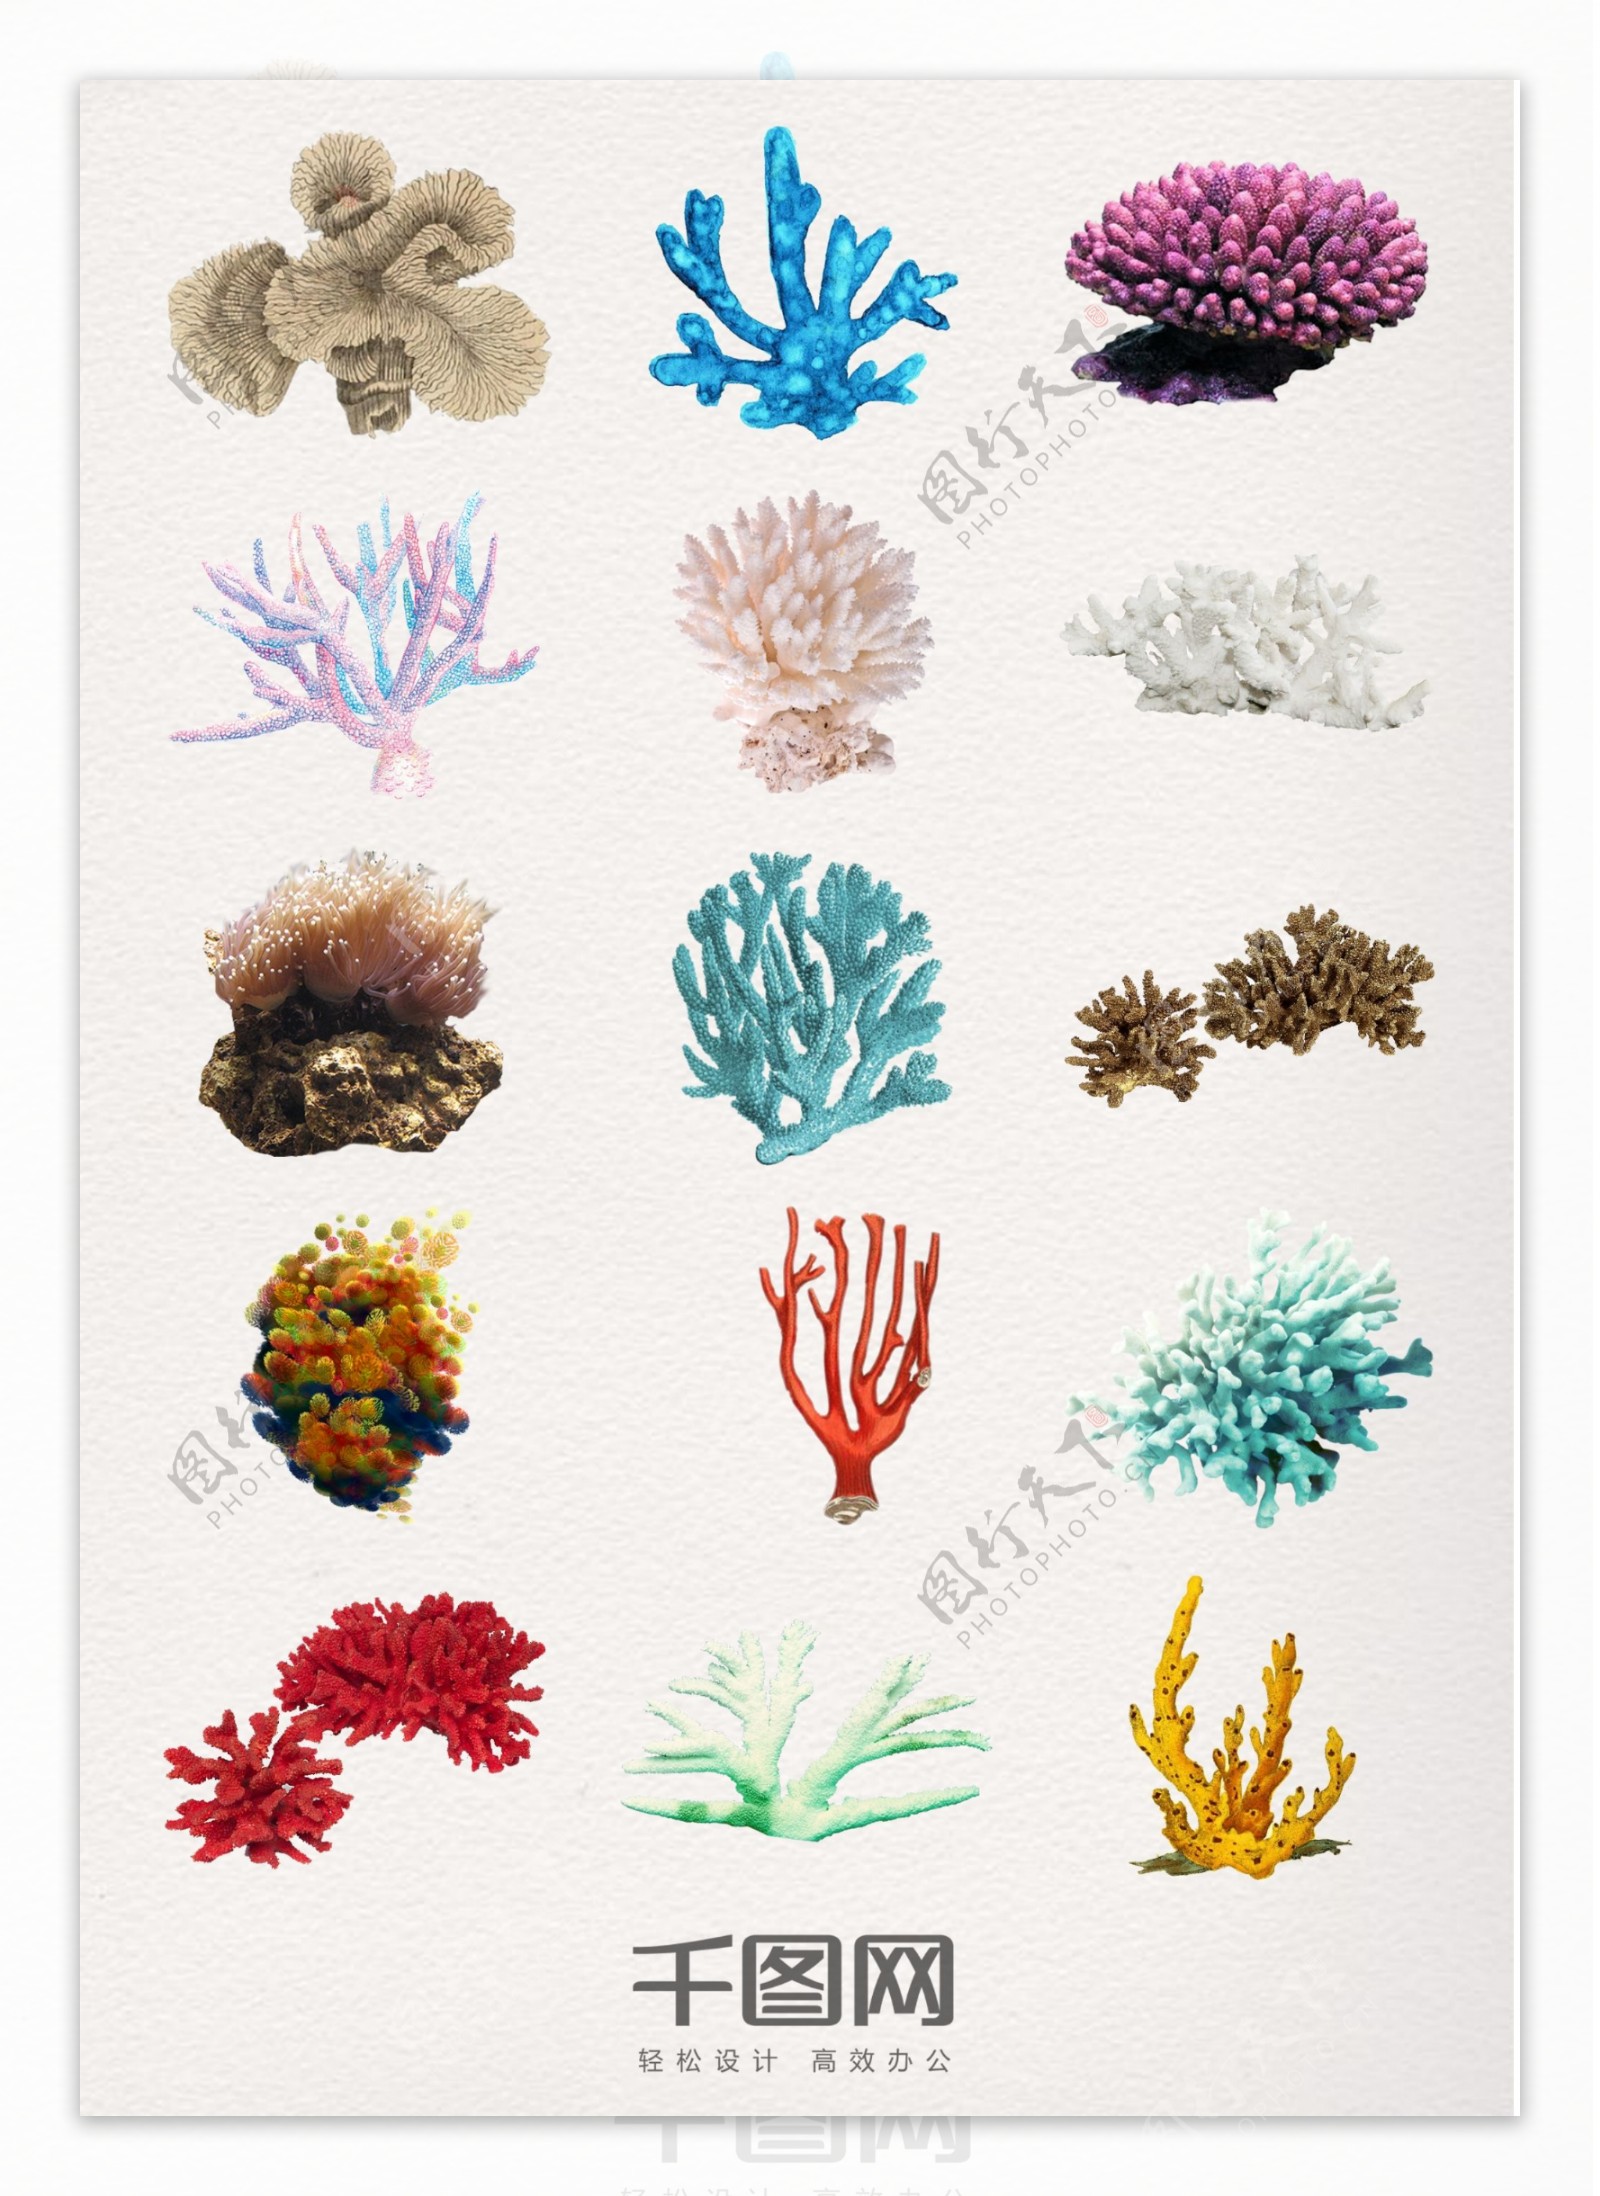 真实的珊瑚元素素材